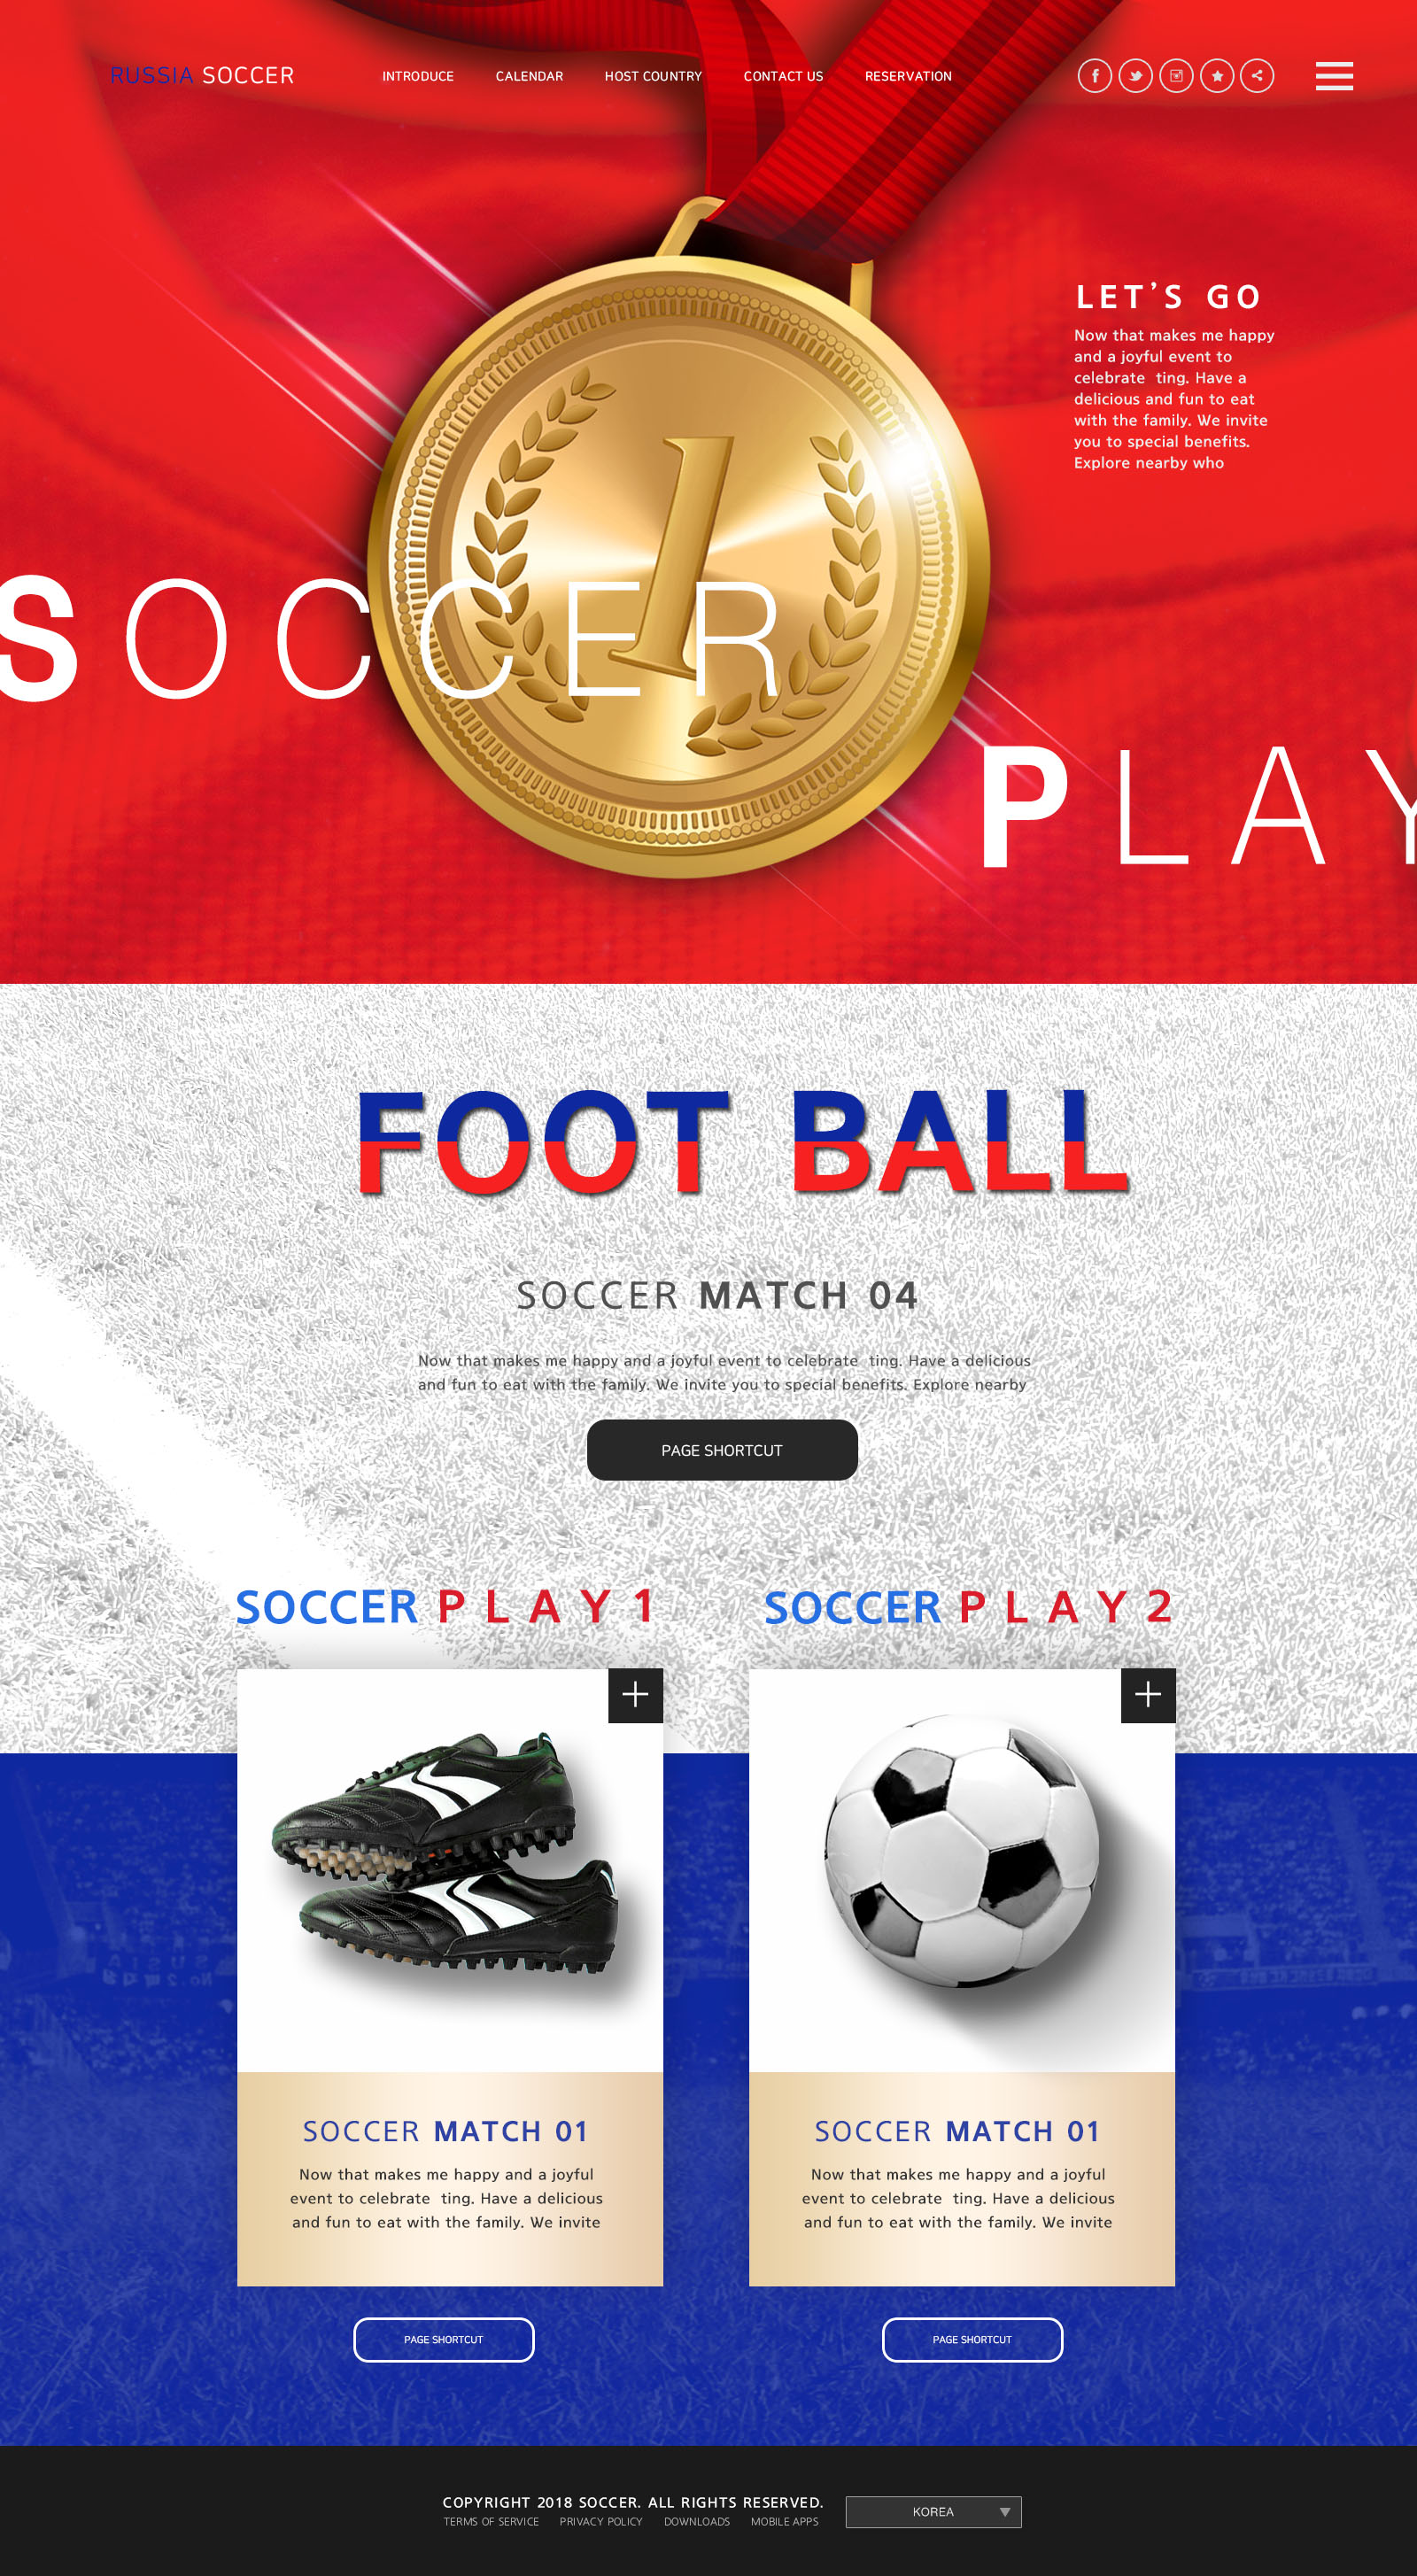 世界杯足球专题广告设计PSD模板蚂蚁素材精选(韩国风格)插图(3)